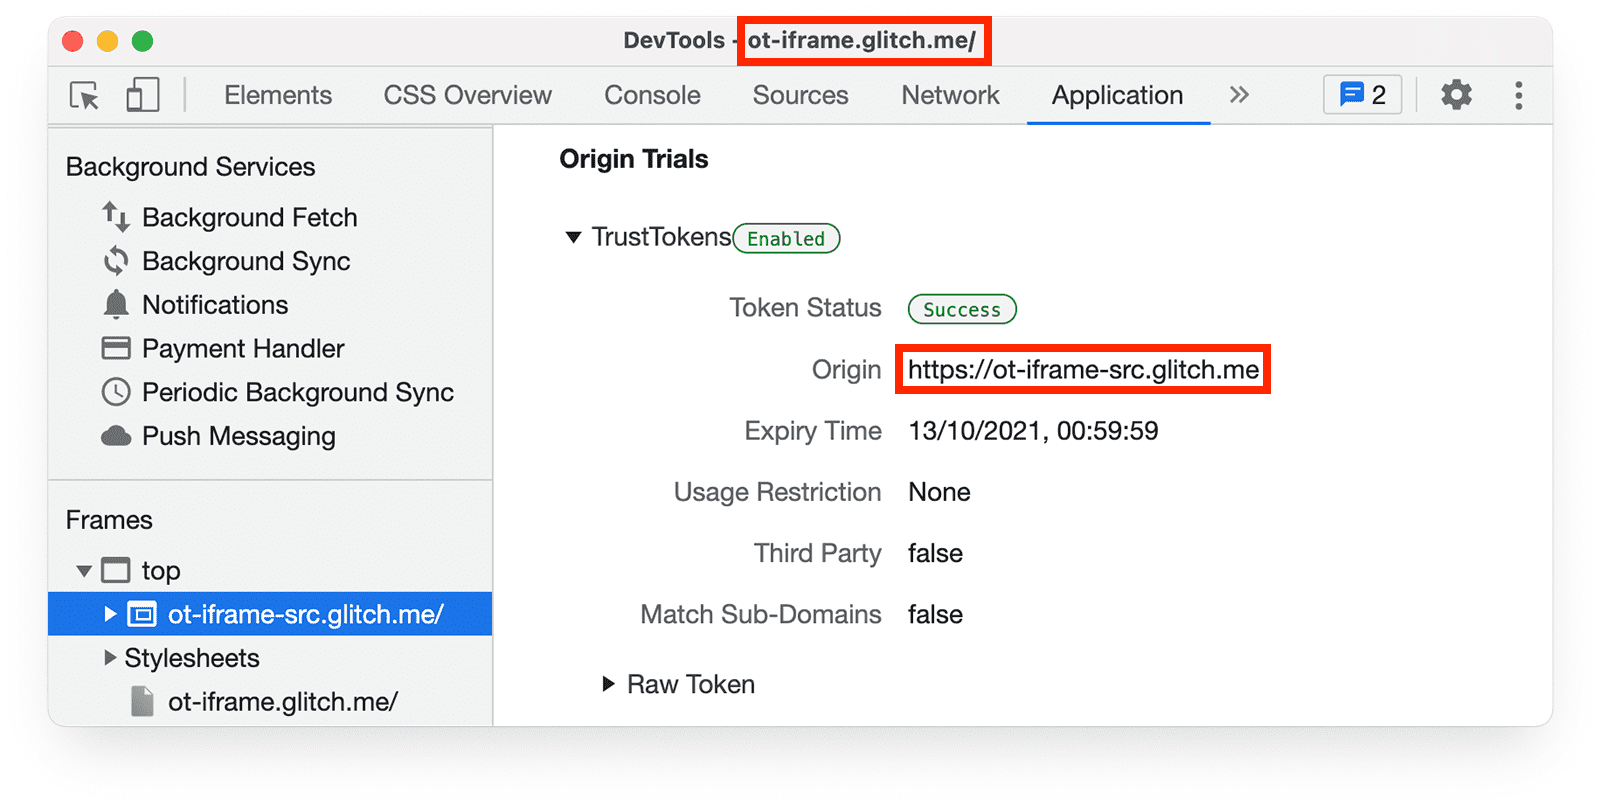 لوحة تطبيق Chrome DevTools تعرض الرموز المميزة لمرحلة التجربة والتقييم للصفحة في iframe.